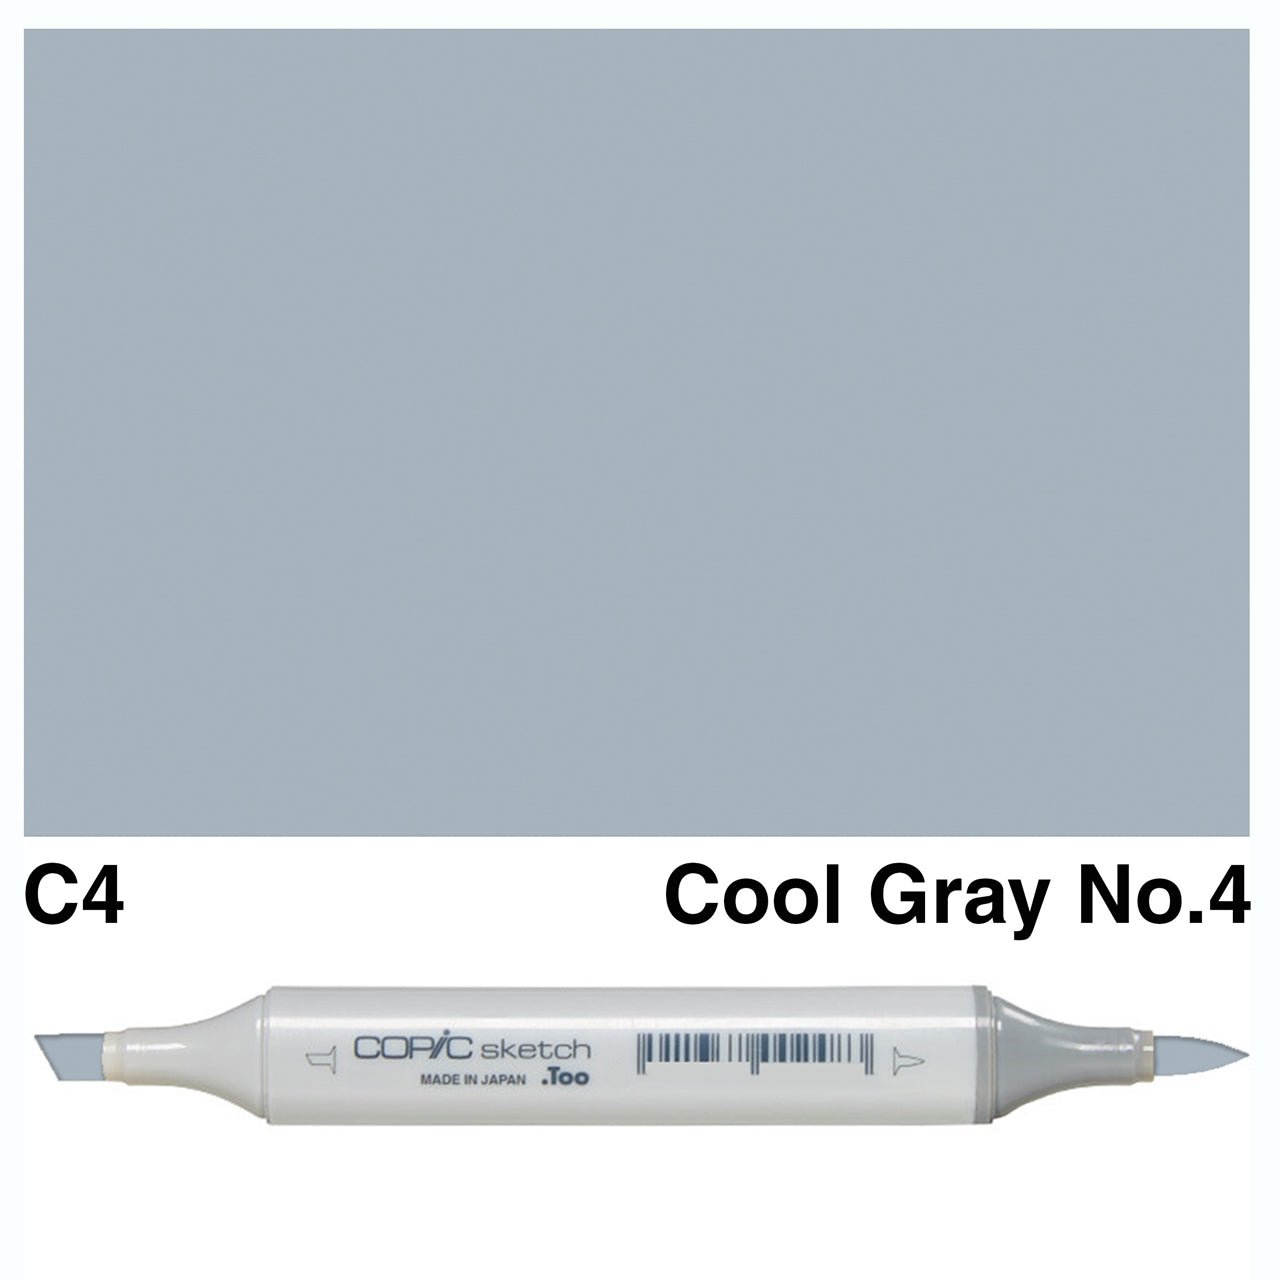 Copic Sketch C4 Cool Gray No.4 - theartshop.com.au